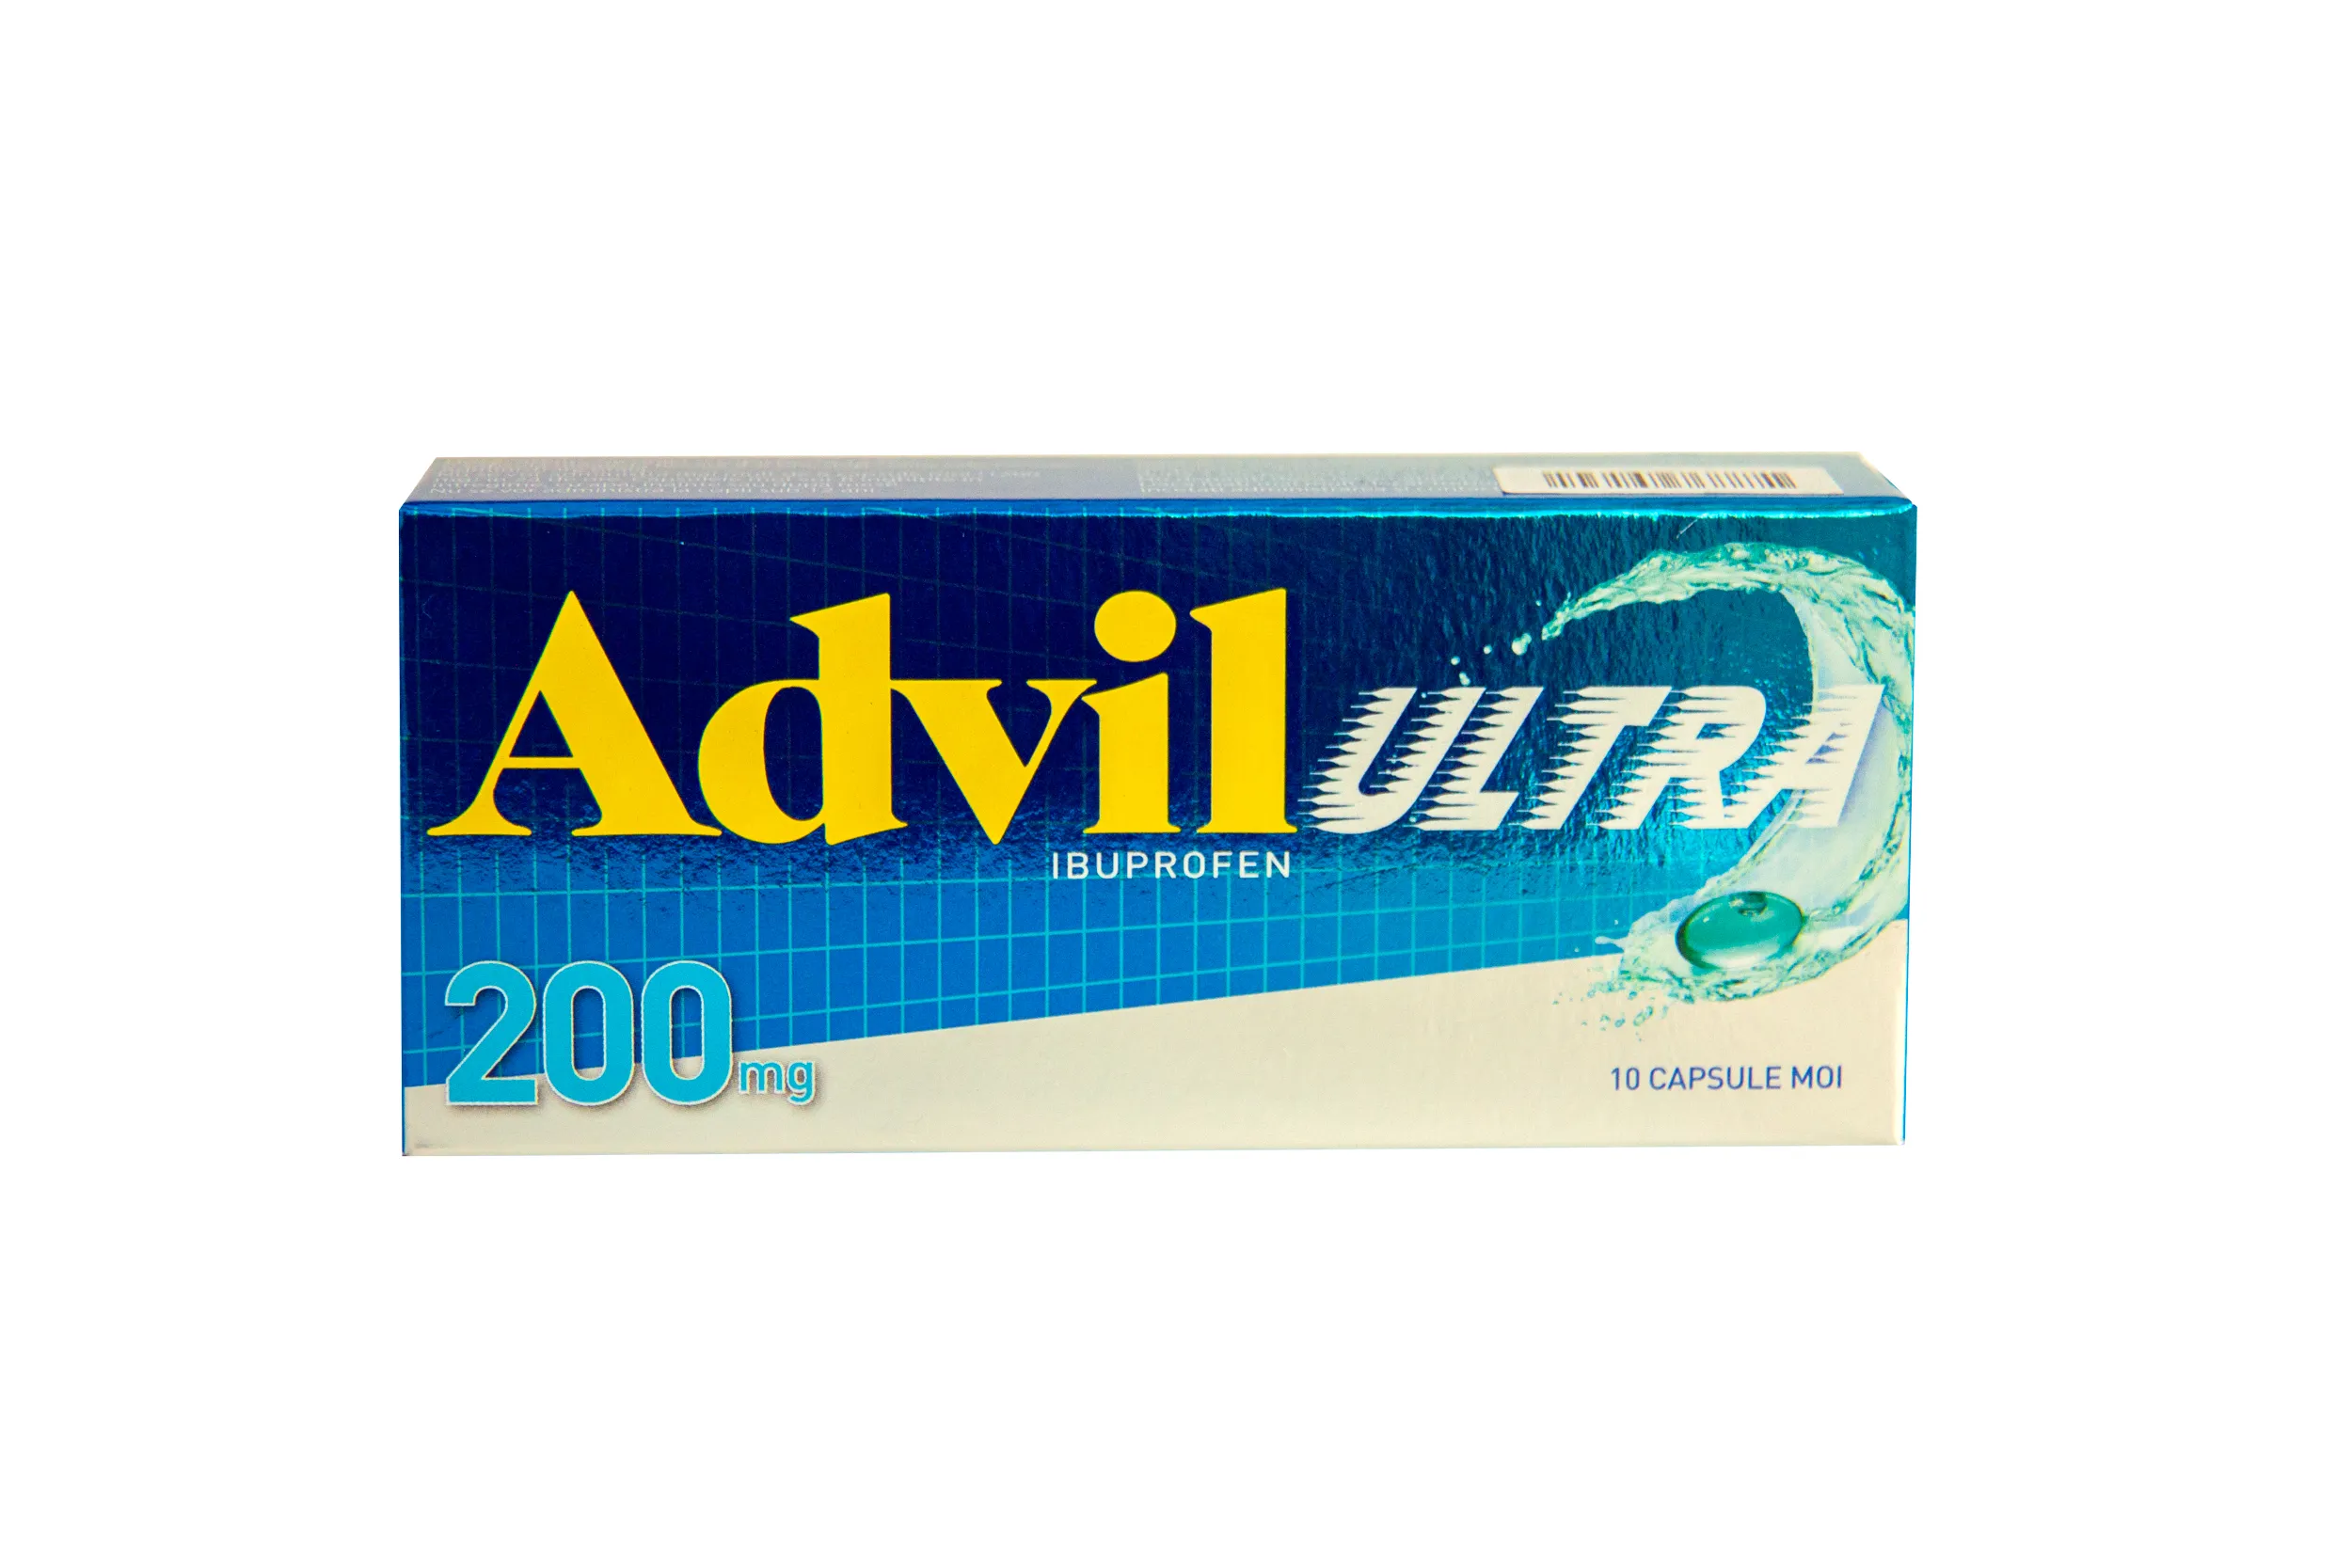 Advil Ultra 200mg, 10 capsule moi, Gsk